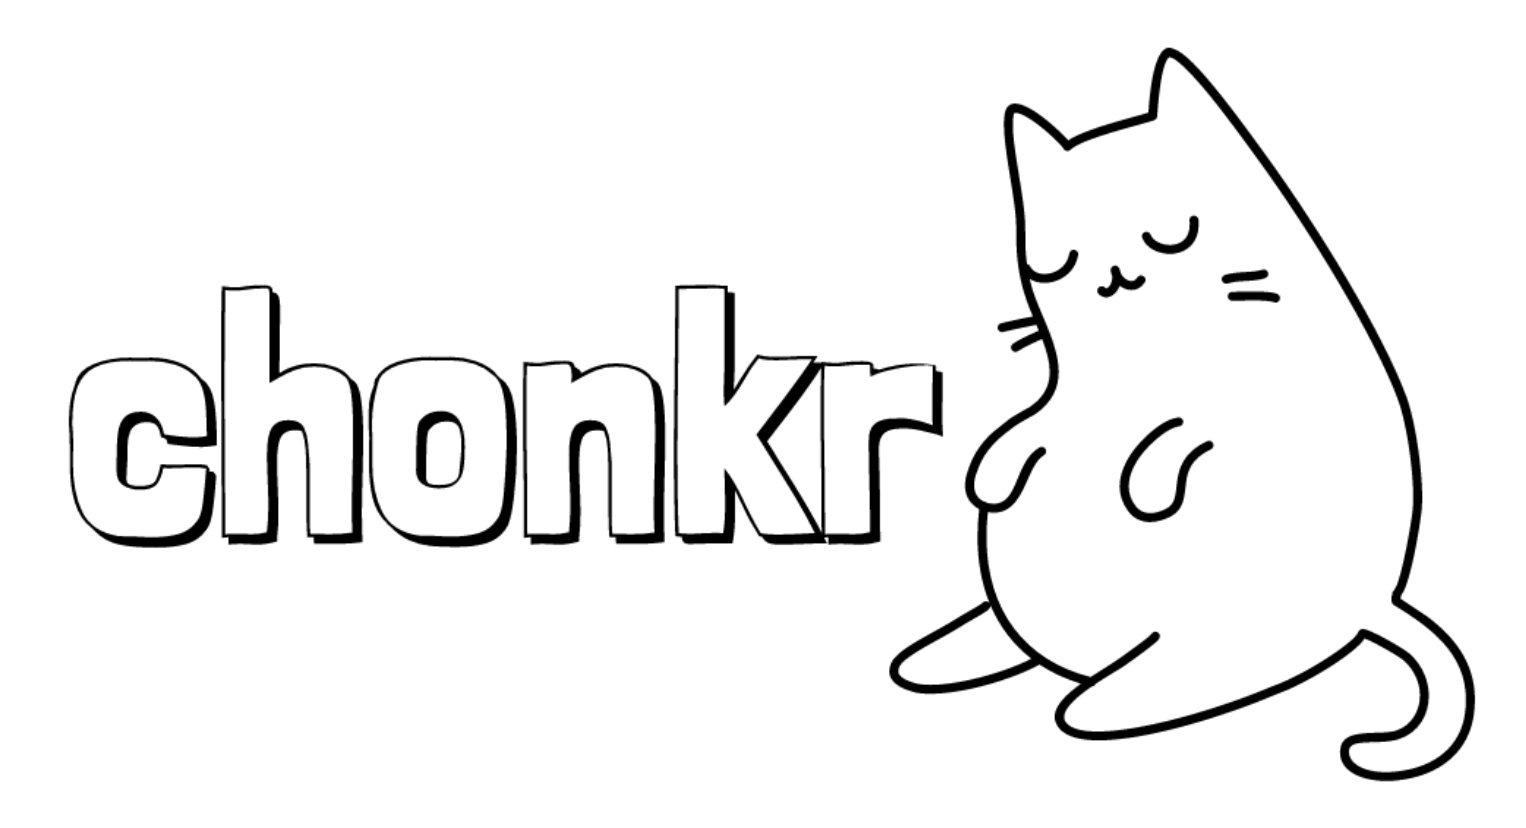 Chonky logo